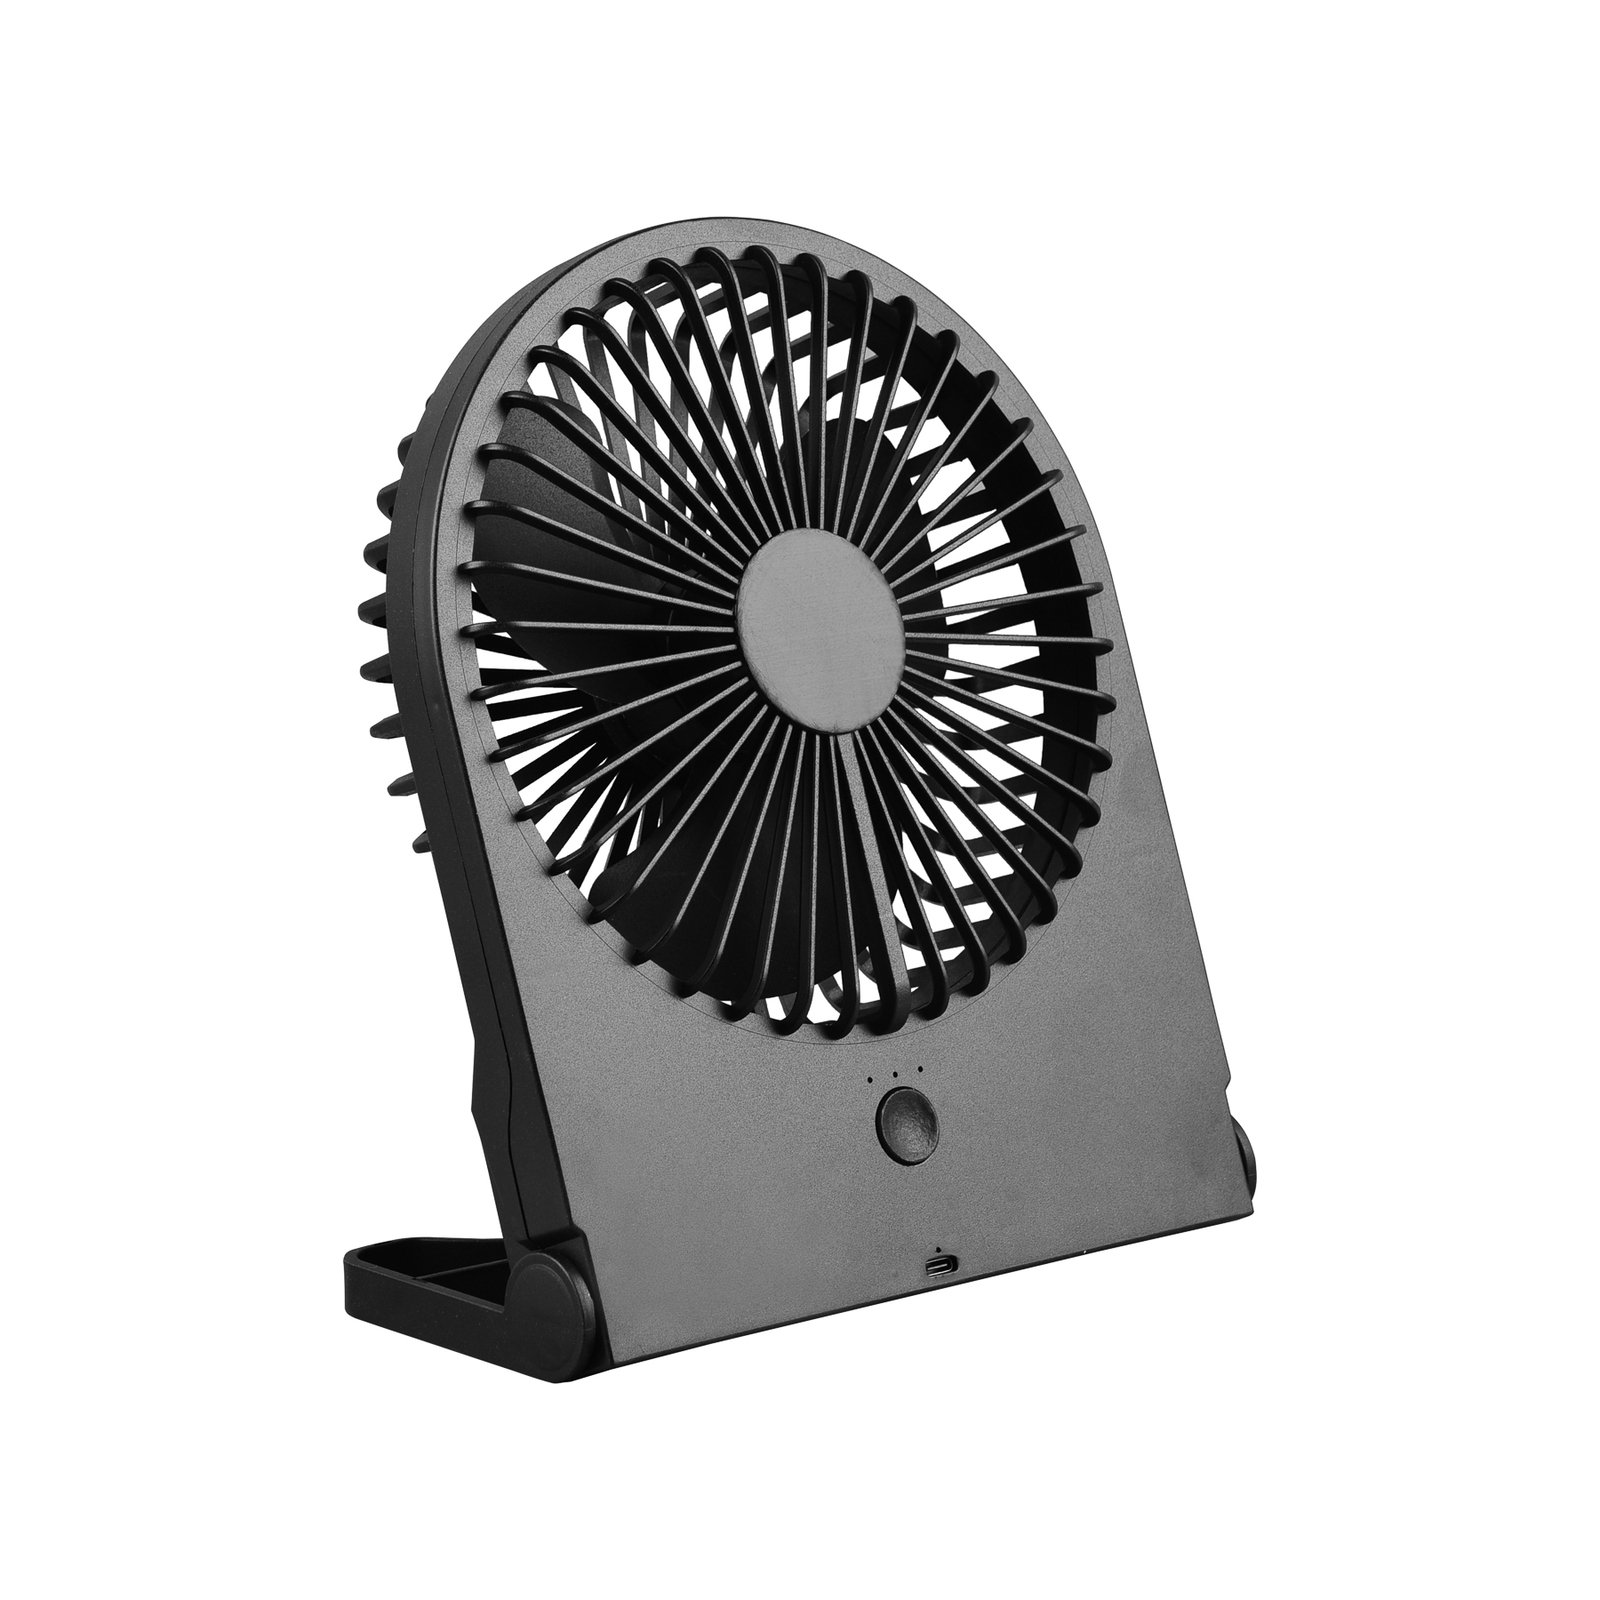 Breezy rechargeable table fan, black, quiet